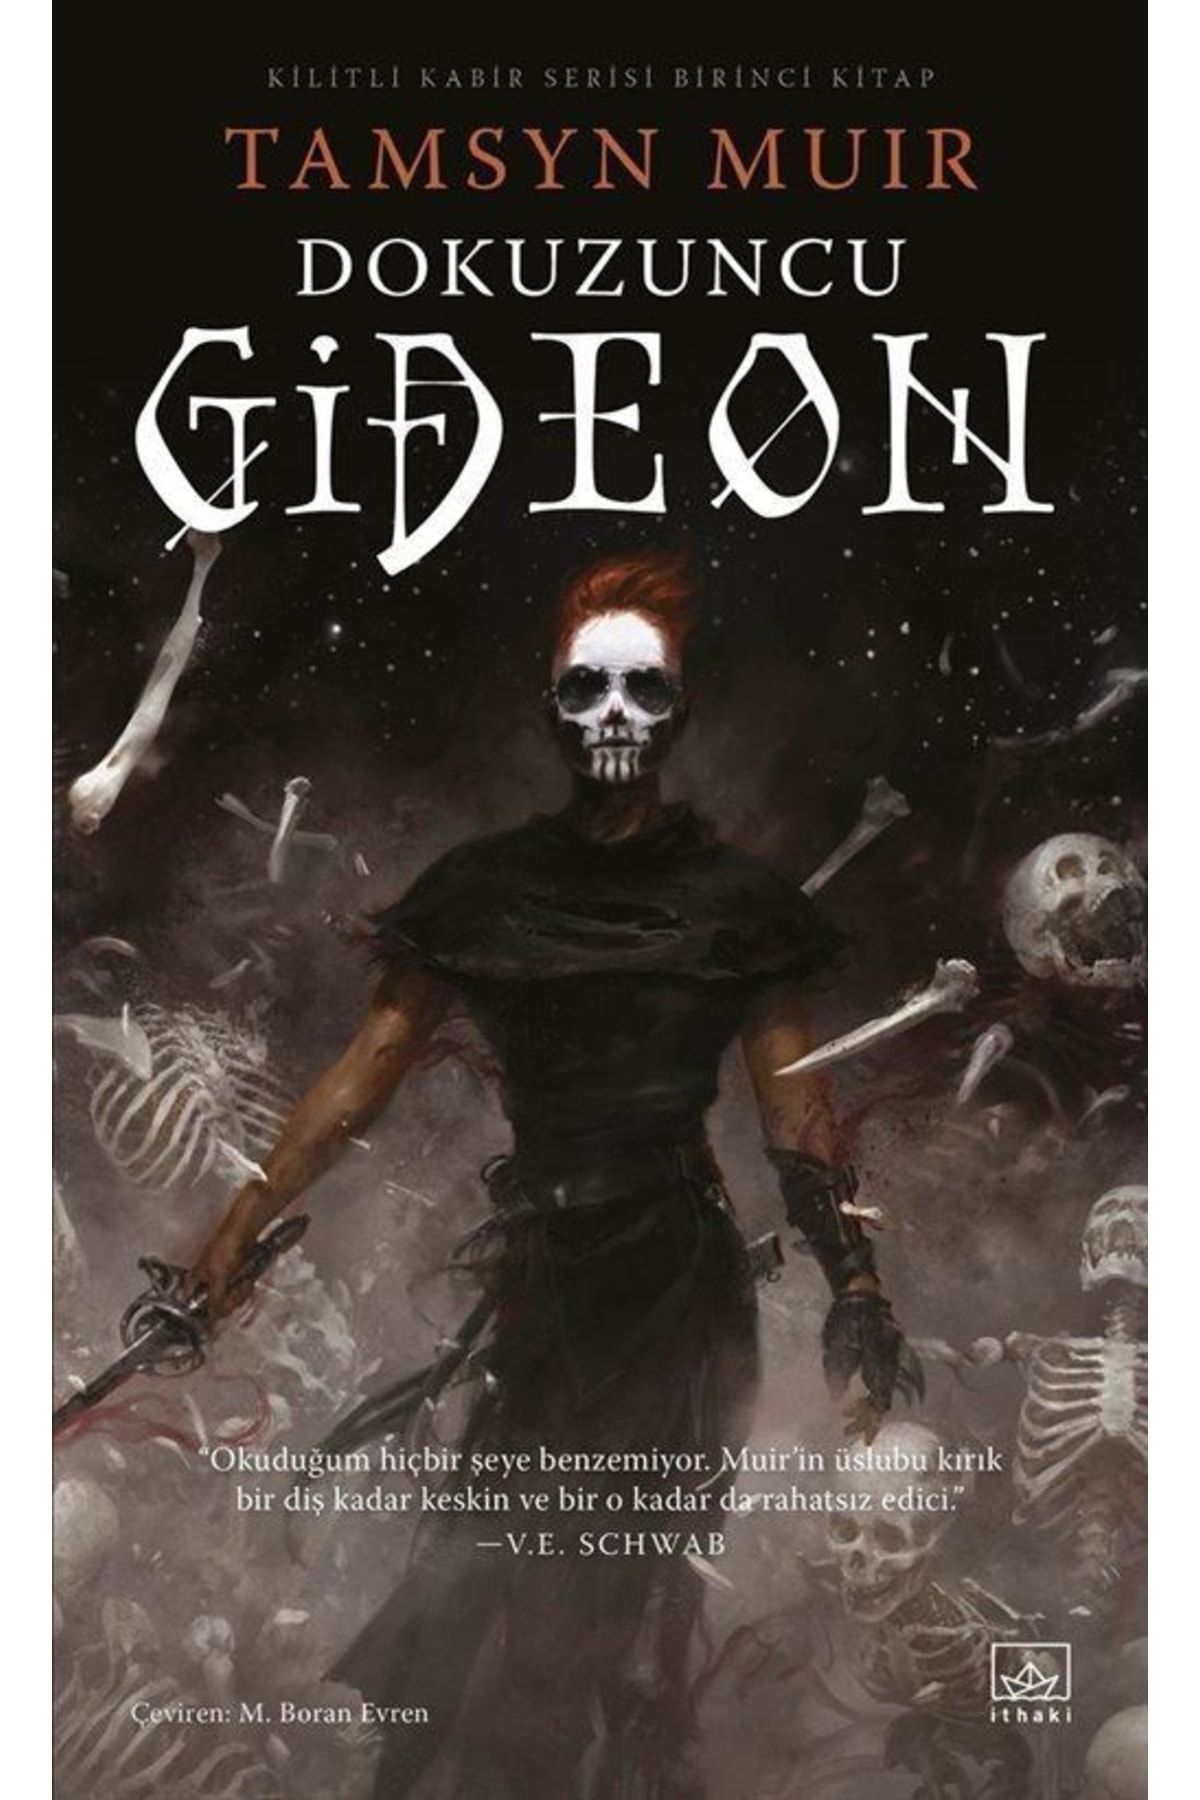 İthaki Yayınları Dokuzuncu Gideon / Kilitli Kabir 1 - Gideon The Ninth